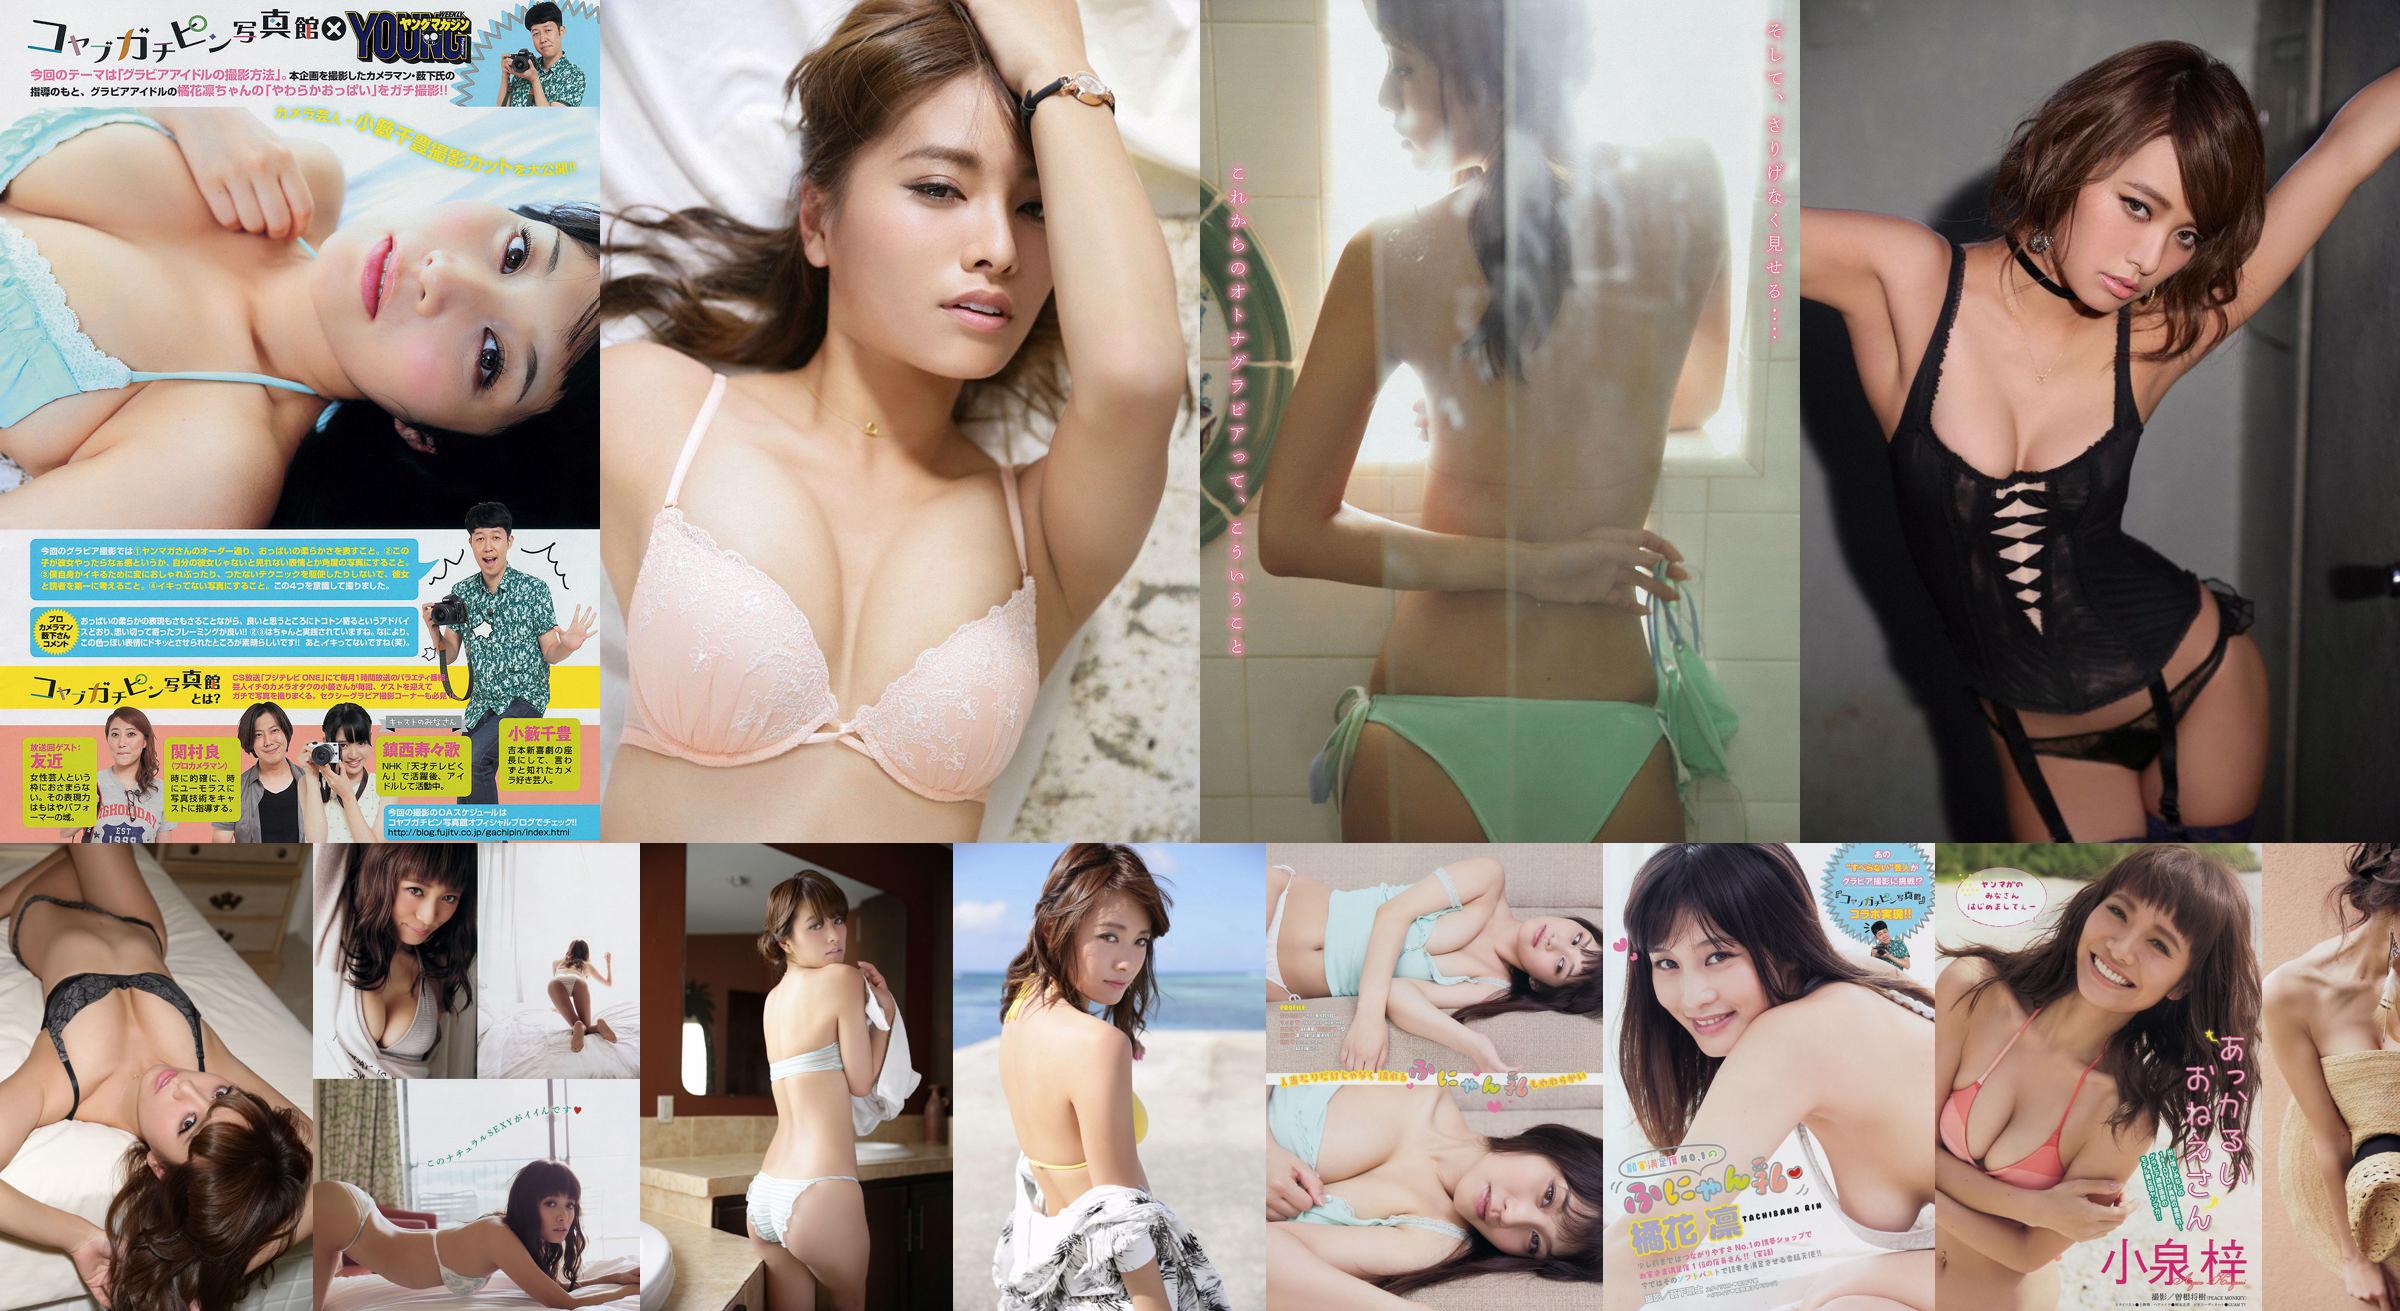 [Majalah Muda] Azusa Koizumi Tachibana Rin 2014 Majalah Foto No.43 No.68bd46 Halaman 1